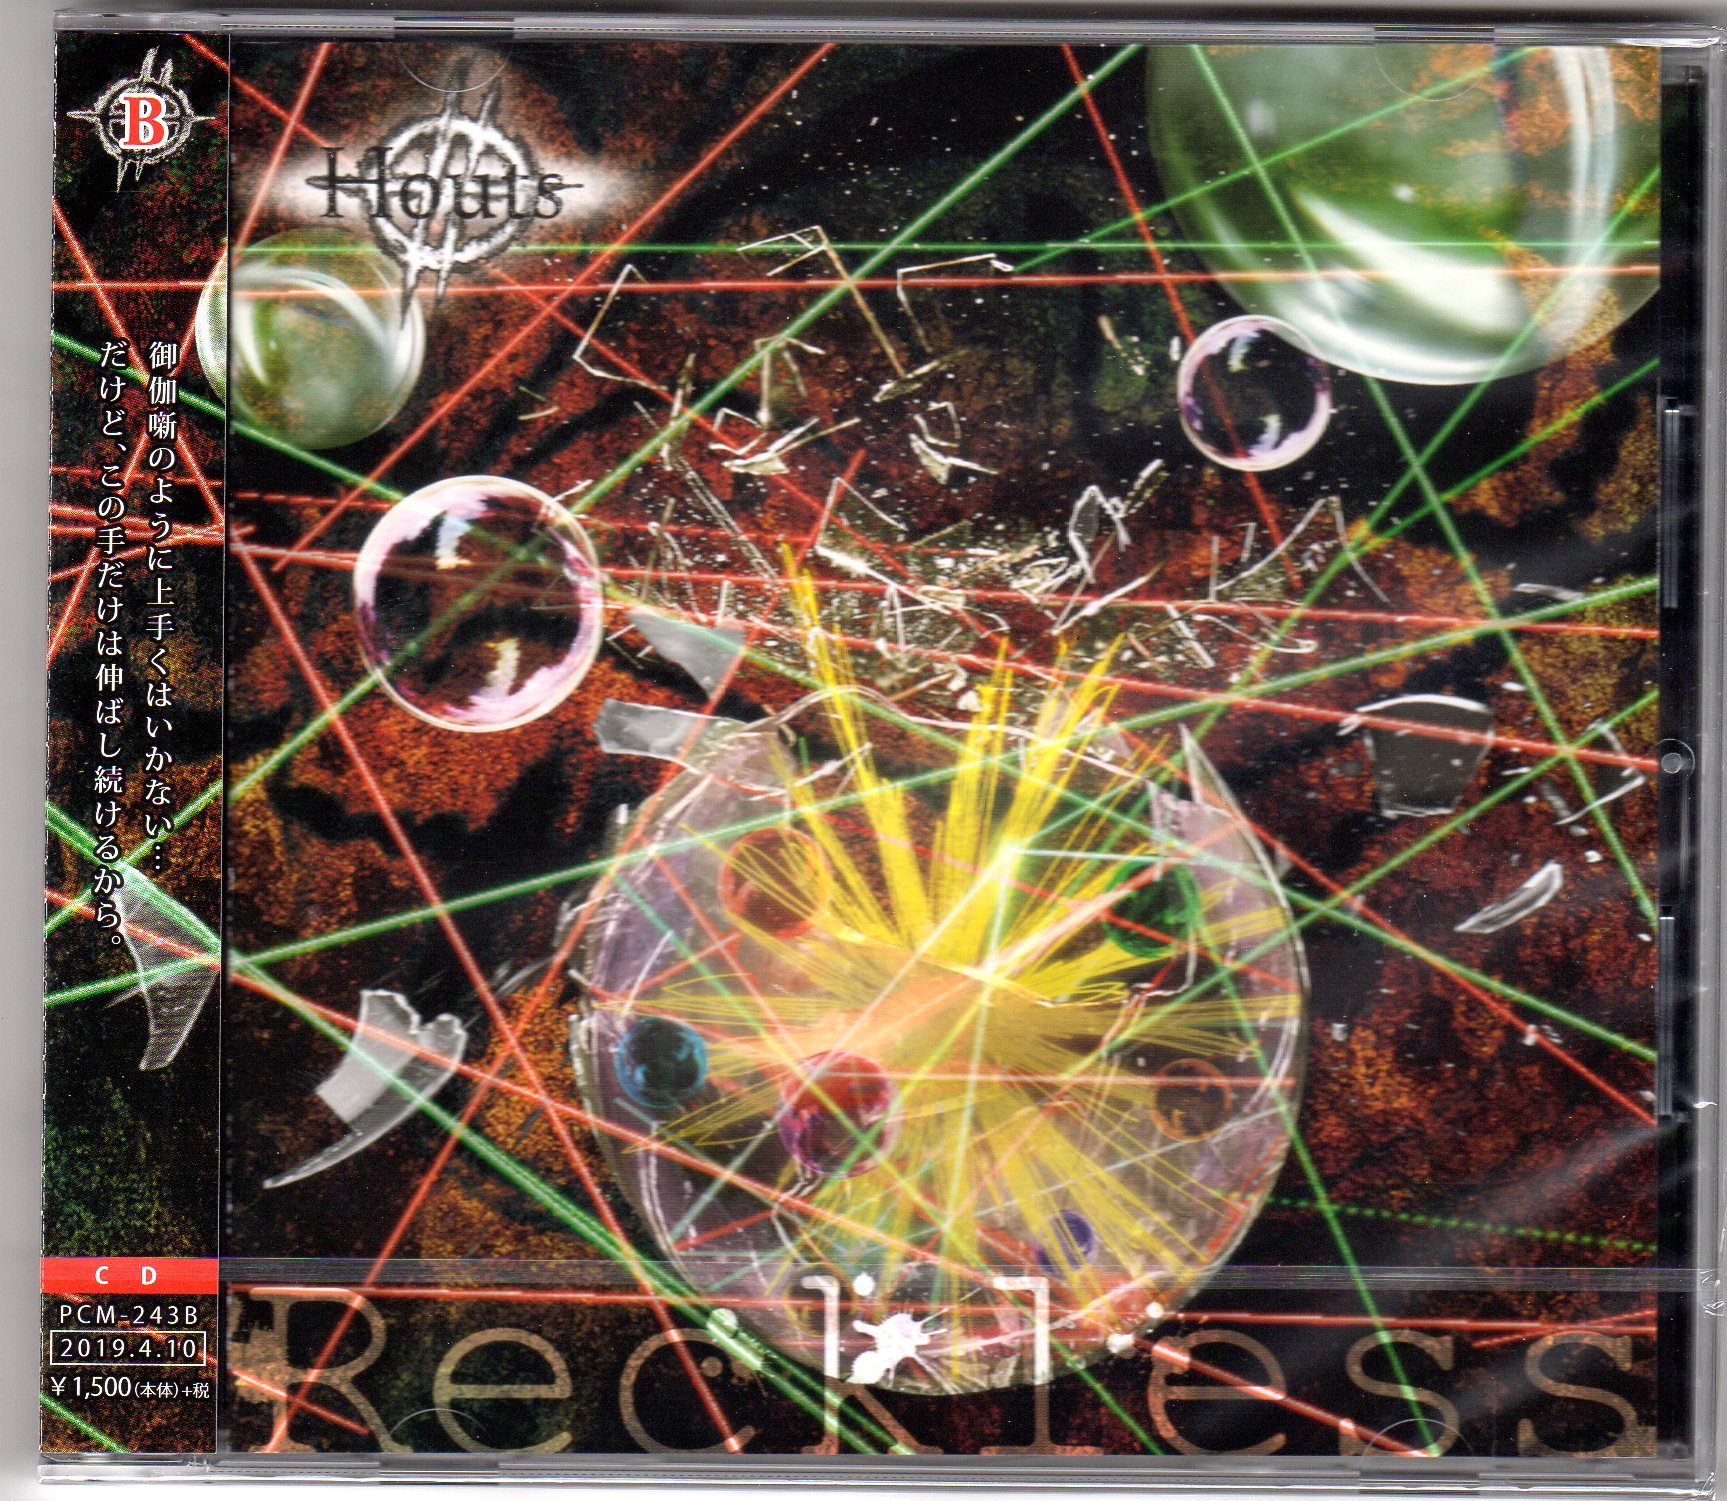 ホーツ の CD 【Btype】Reckless